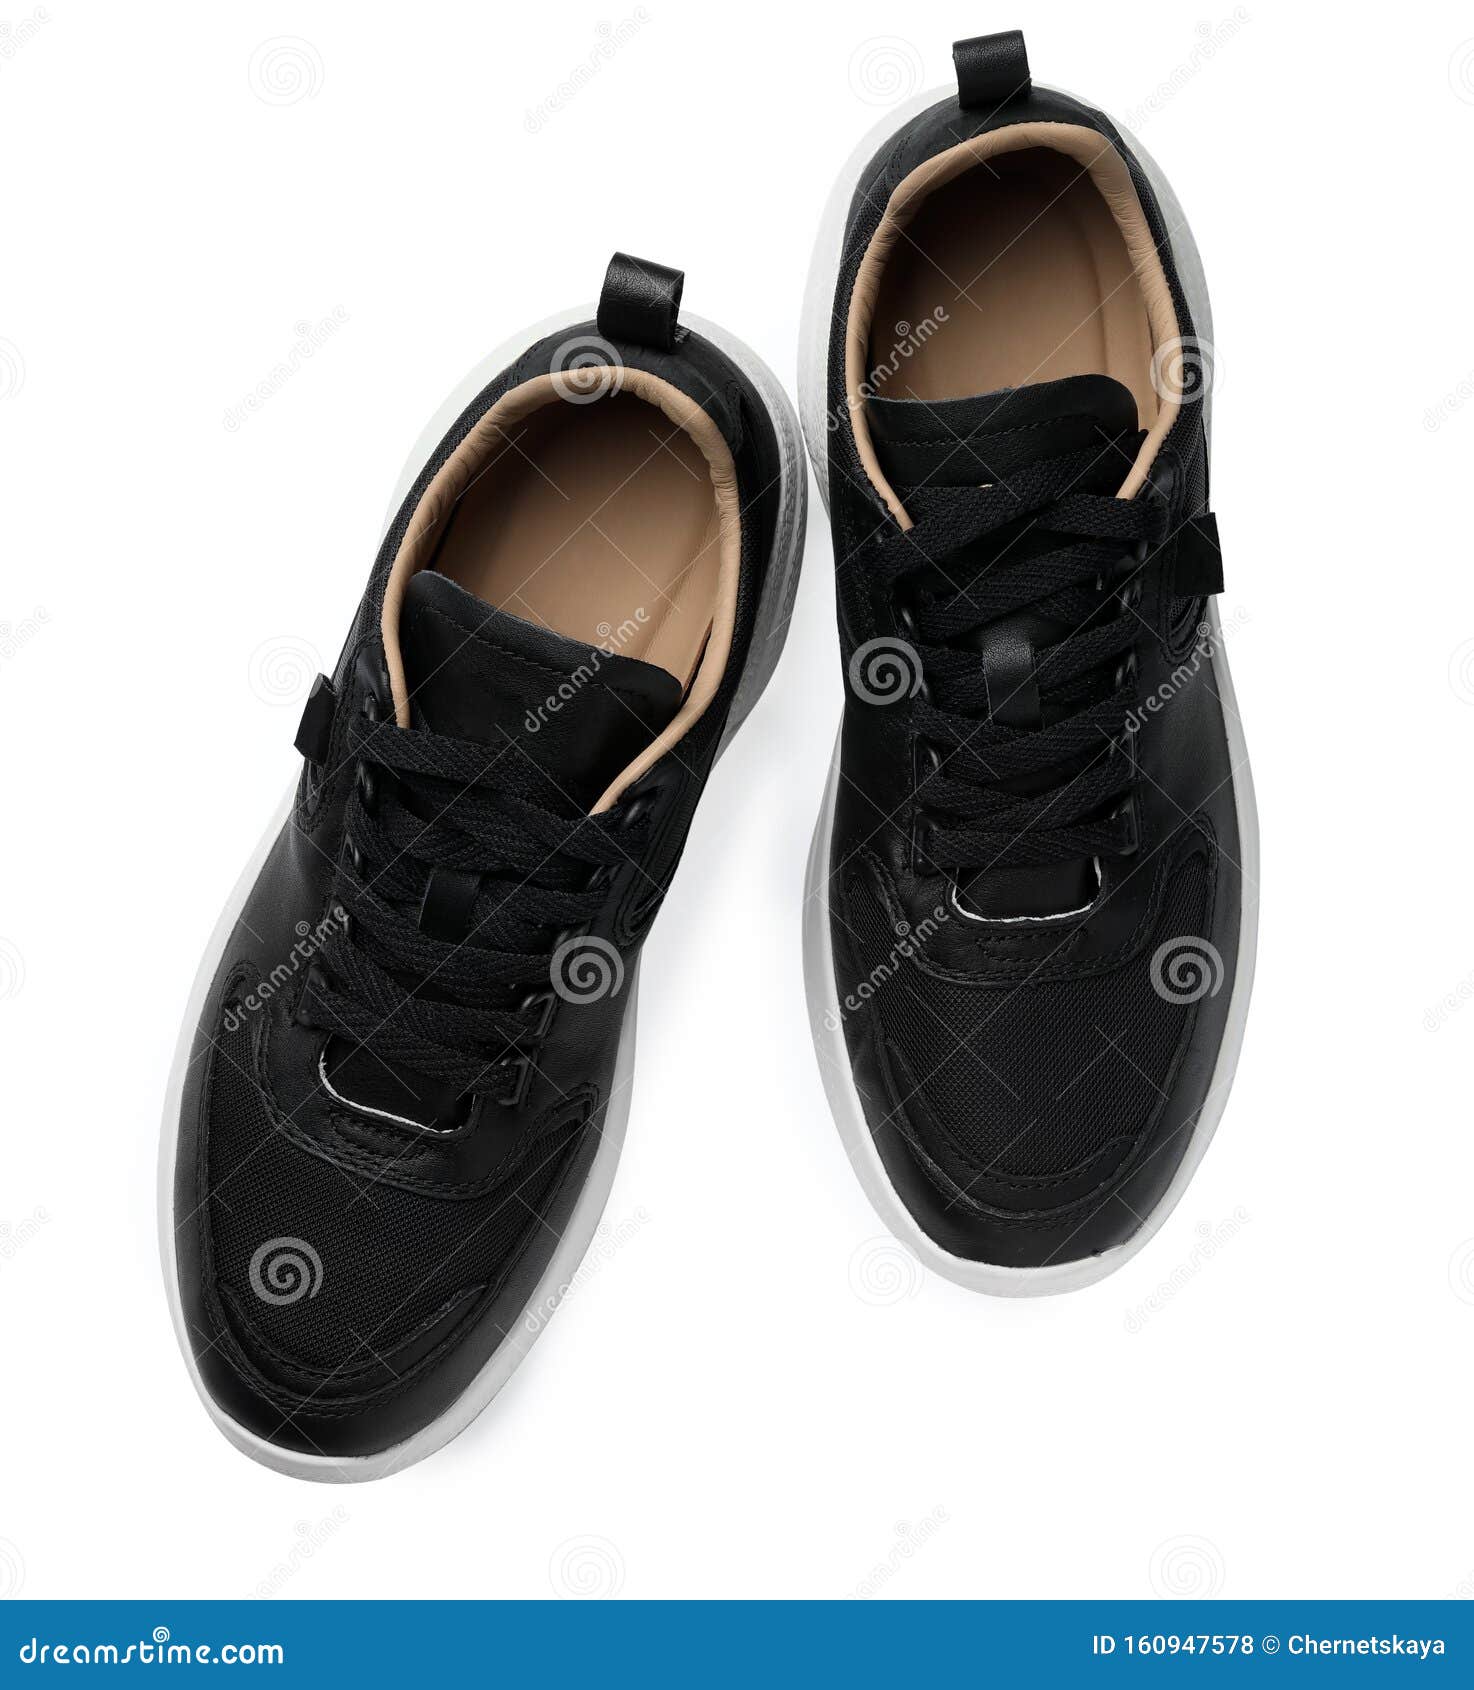 Pair of Stylish Shoes on White Background Stock Photo - Image of ...